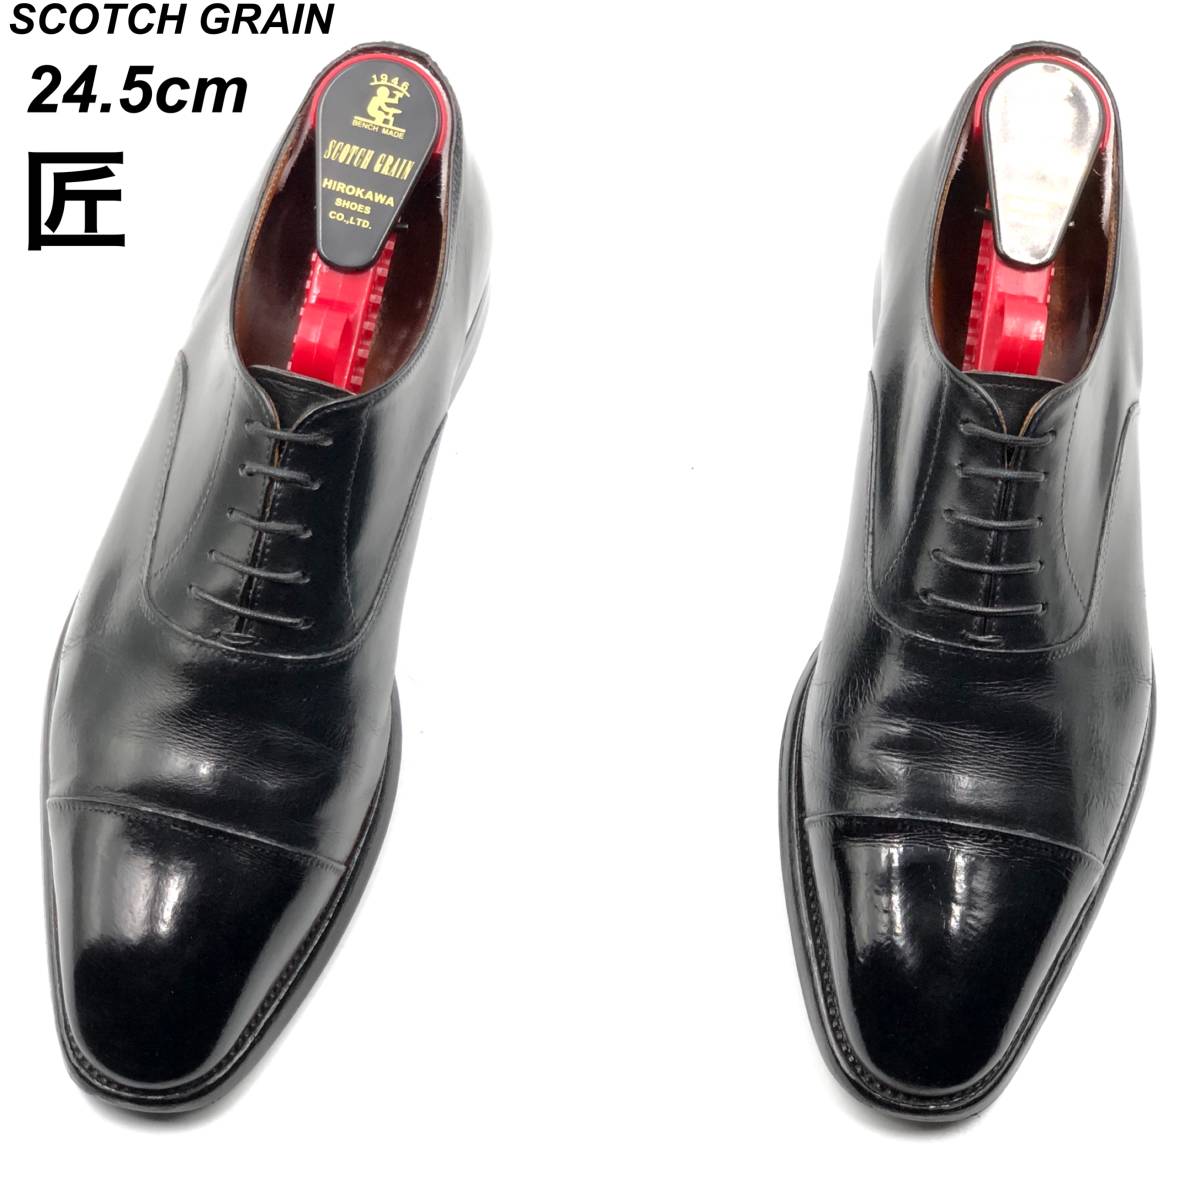 即決 SCOTCH GRAIN スコッチグレイン 匠 24.5cm HA-9046 メンズ レザーシューズ ストレートチップ 黒 ブラック 革靴 皮靴 ビジネスシューズ